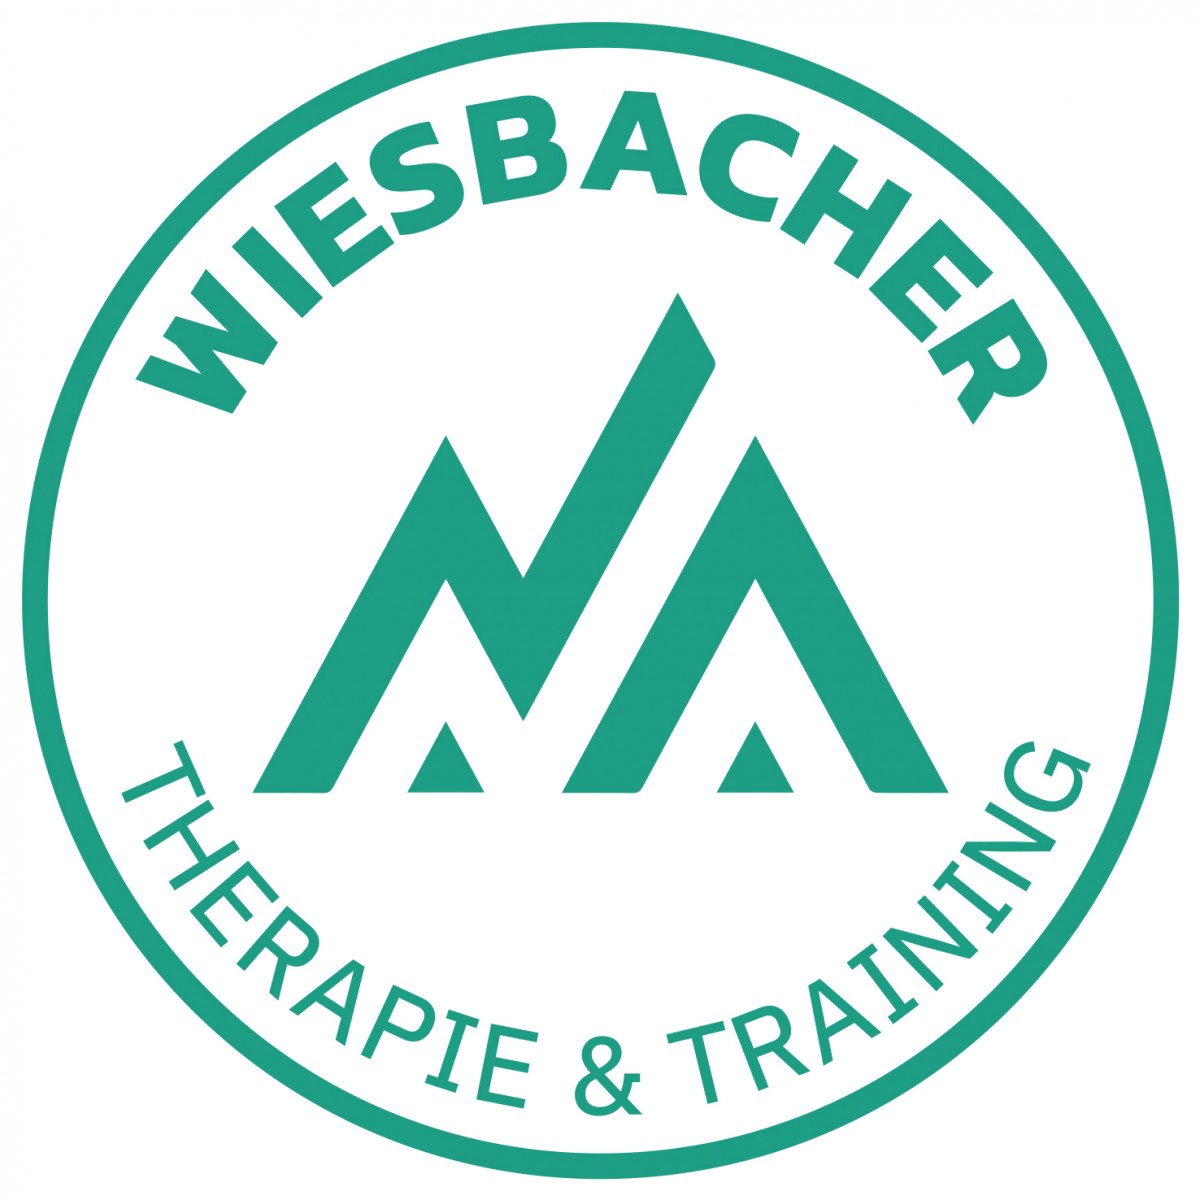 Therapie und Training Wiesbacher